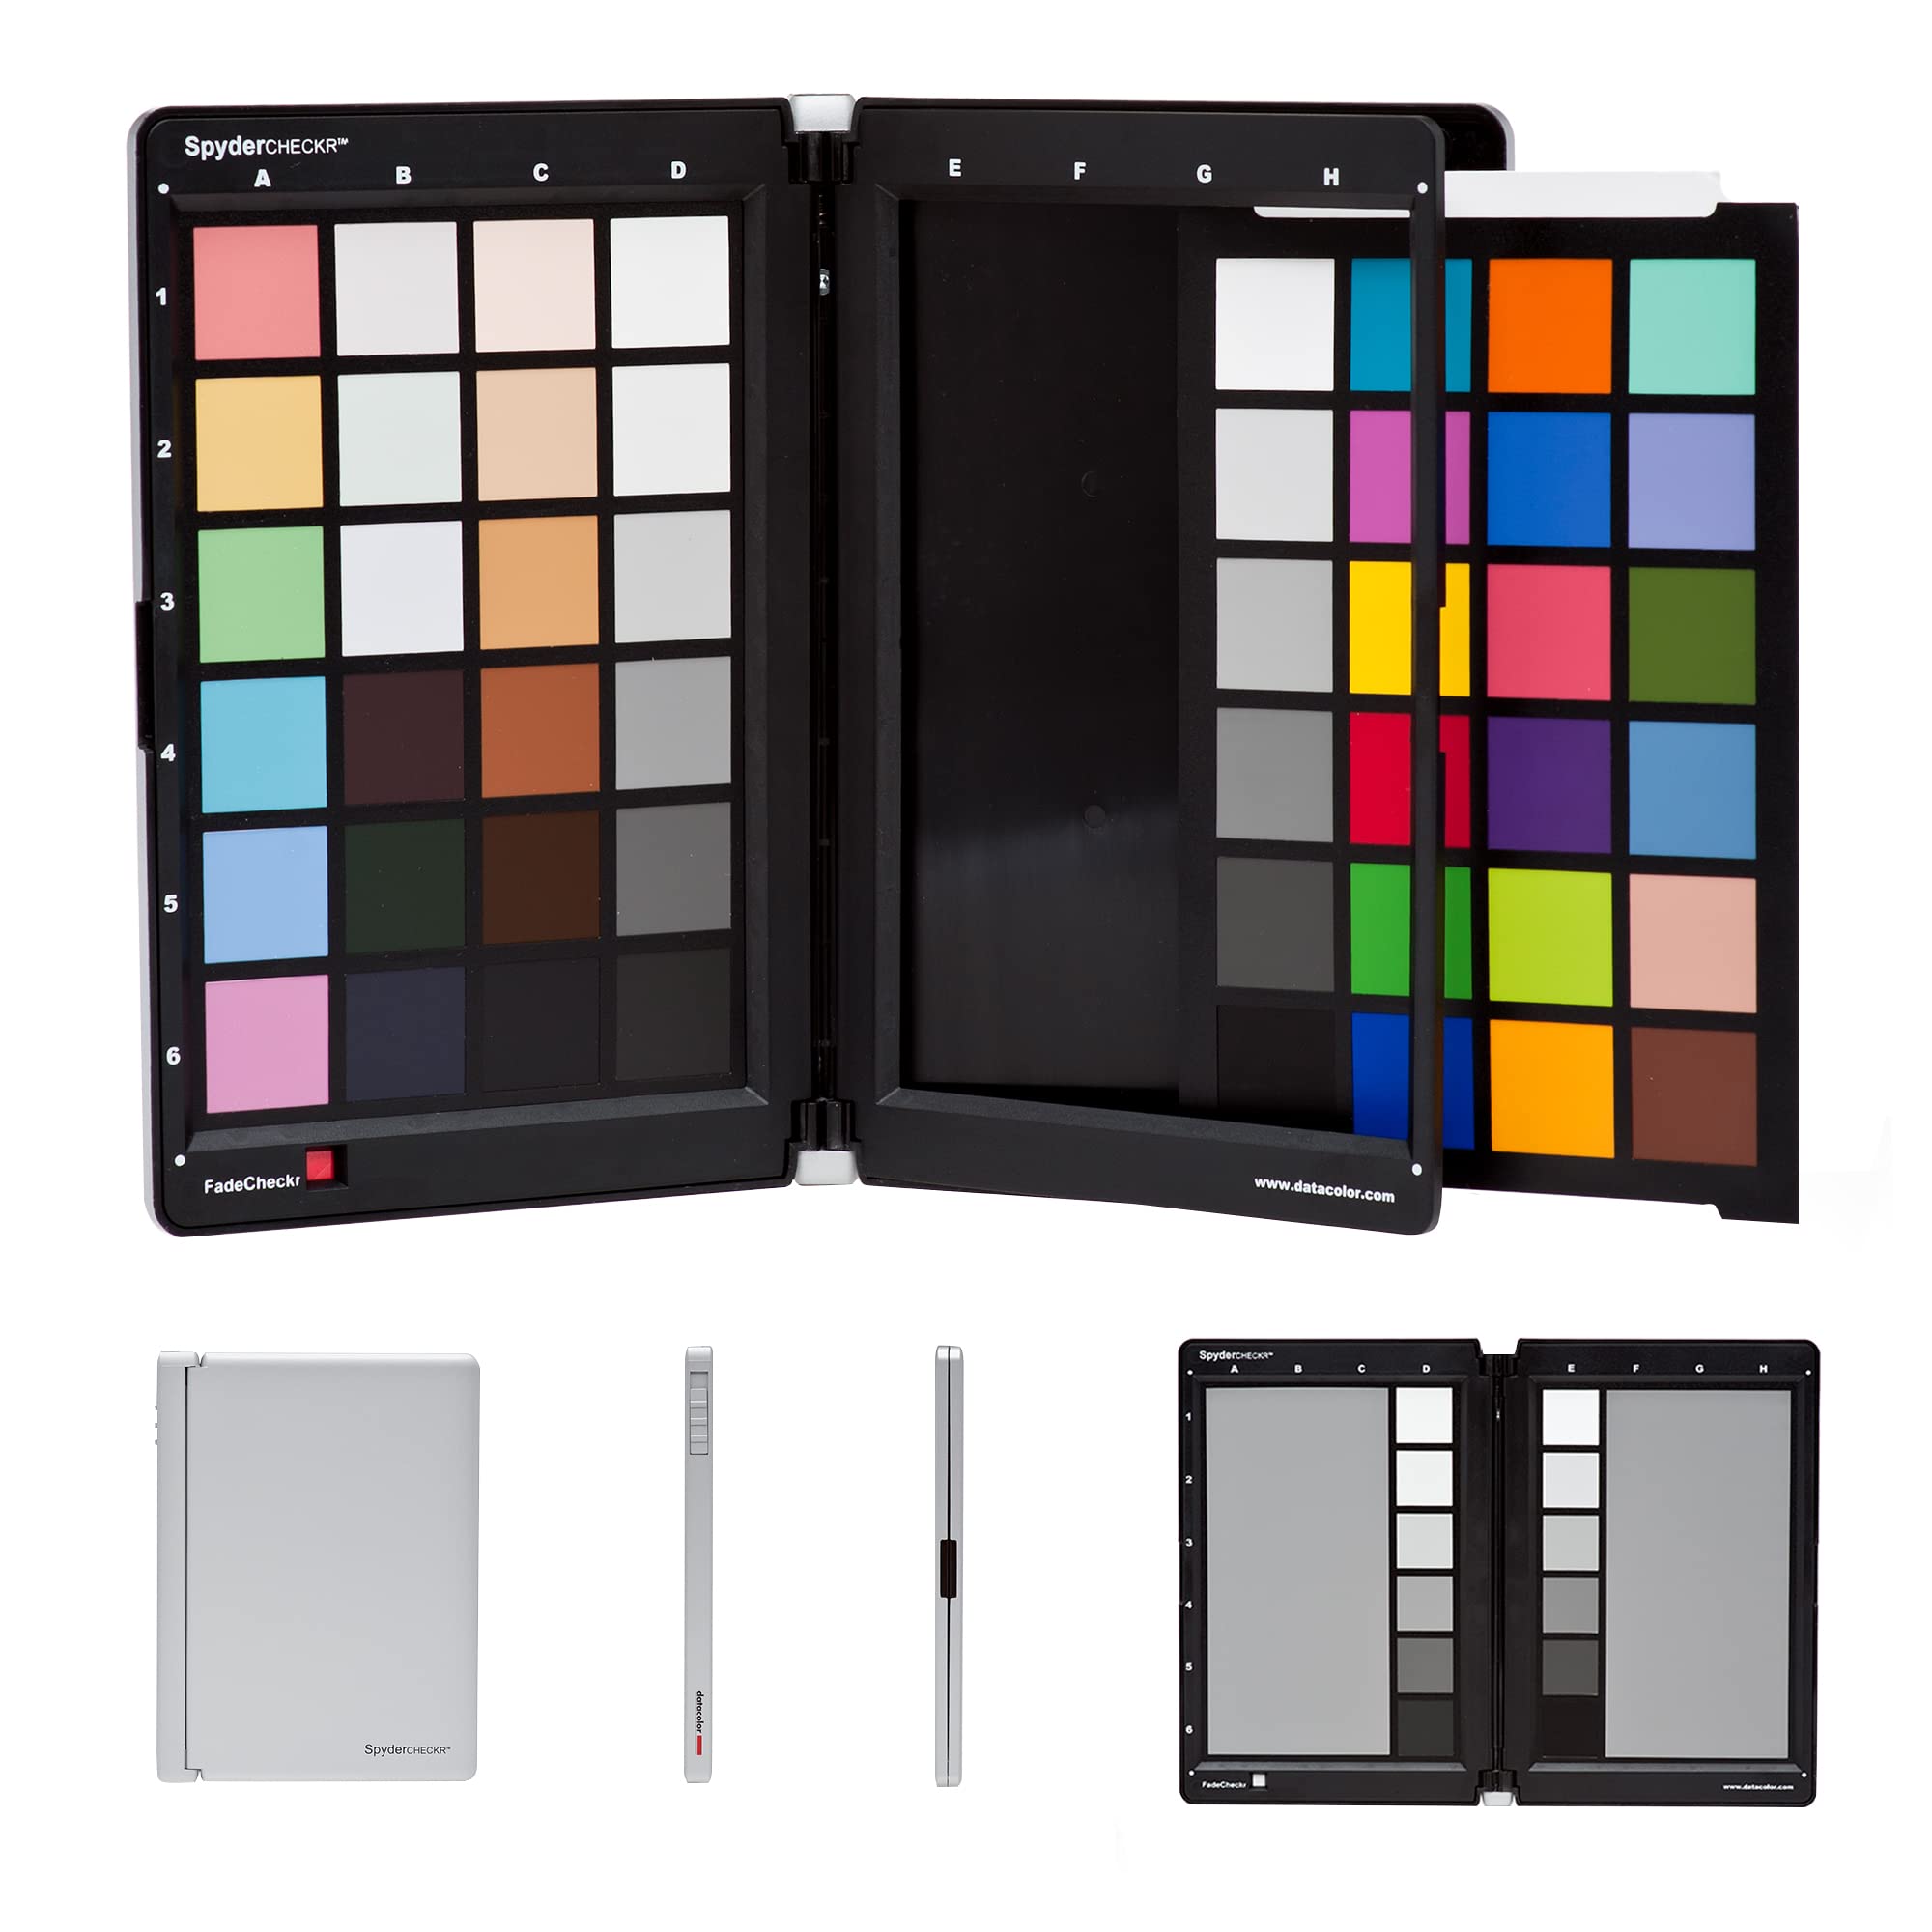  Datacolor Spyder Checkr Outil d'étalonnage des couleurs pour caméras. Garantissez des couleurs précises et cohérentes avec des caméras/lumières variées. Possède 48 couleurs cibles + carte grise...